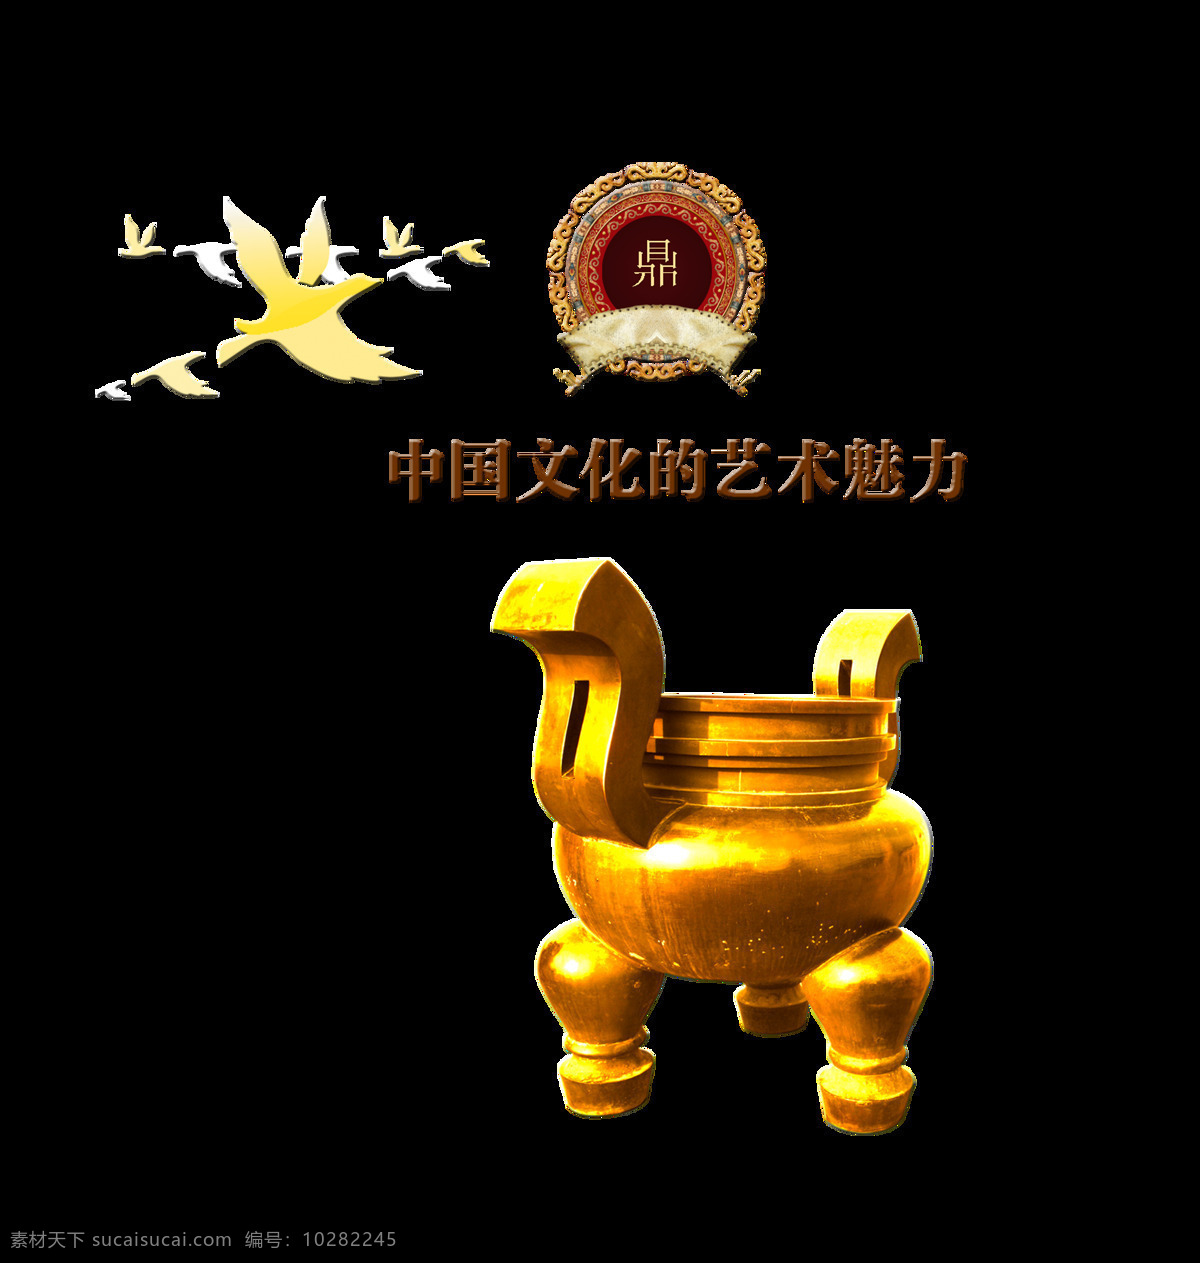 中国 文化 艺术 魅力 大 鼎 金鼎 字 风 中国风 古典 传统 元素 大鼎 古风 传承 上下五千年